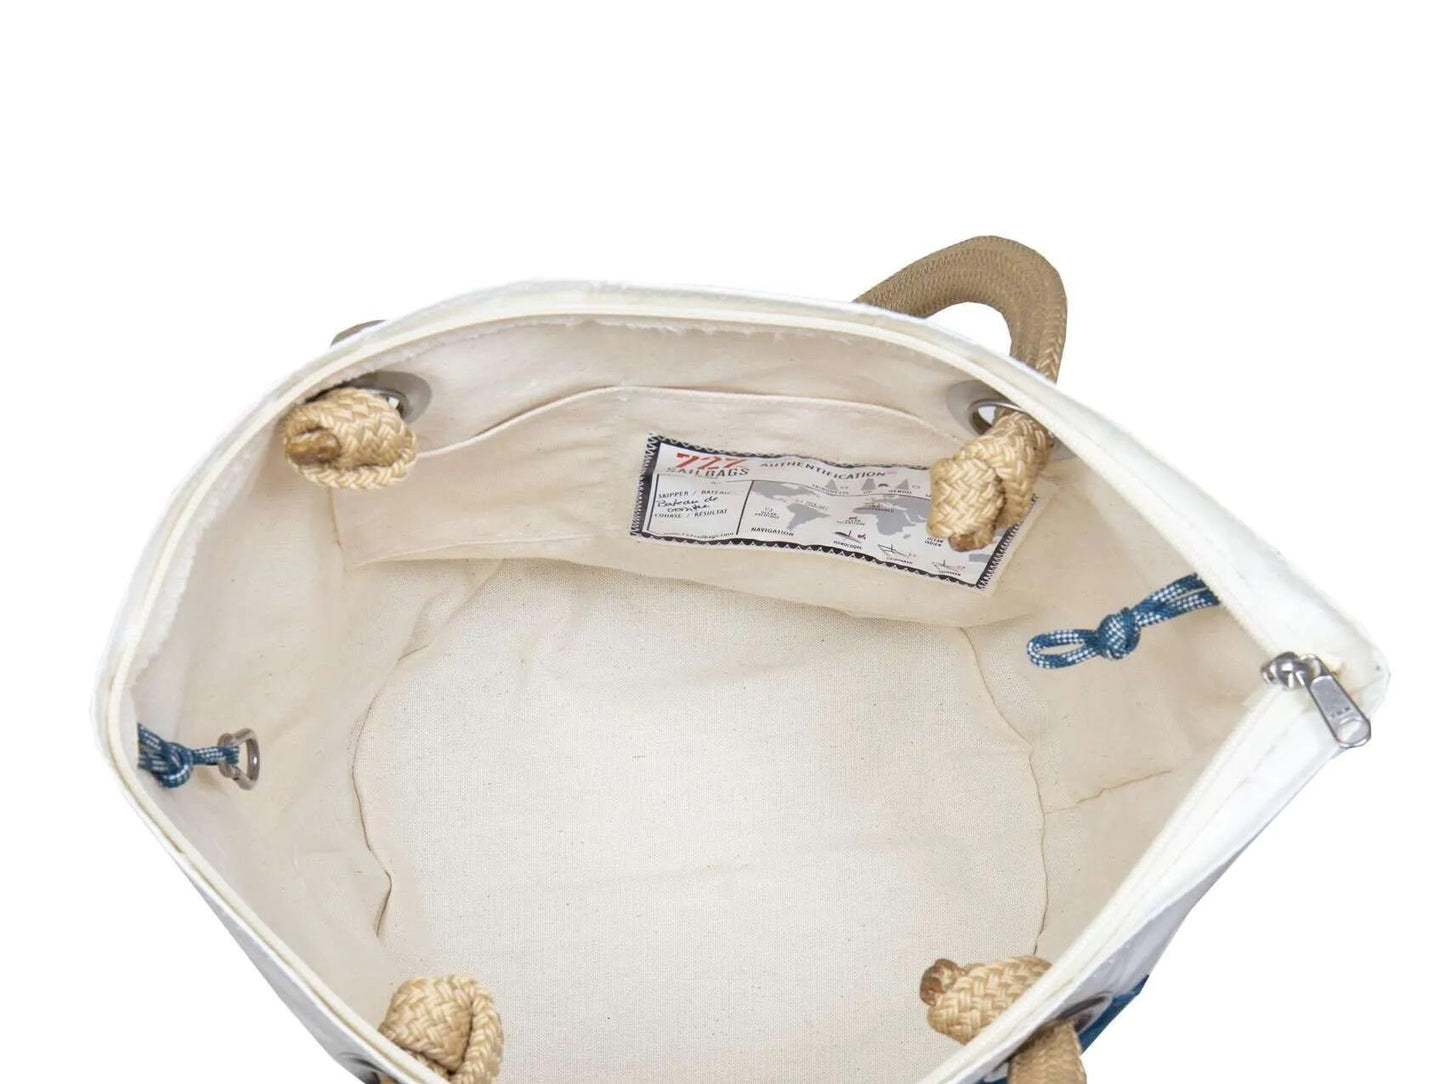 727 Sailbags Handtasche Sandy  N°4 Leinen und Leder * 100 % recycelte Segel * Null Abfall Ziel * weiß beige * handgemacht